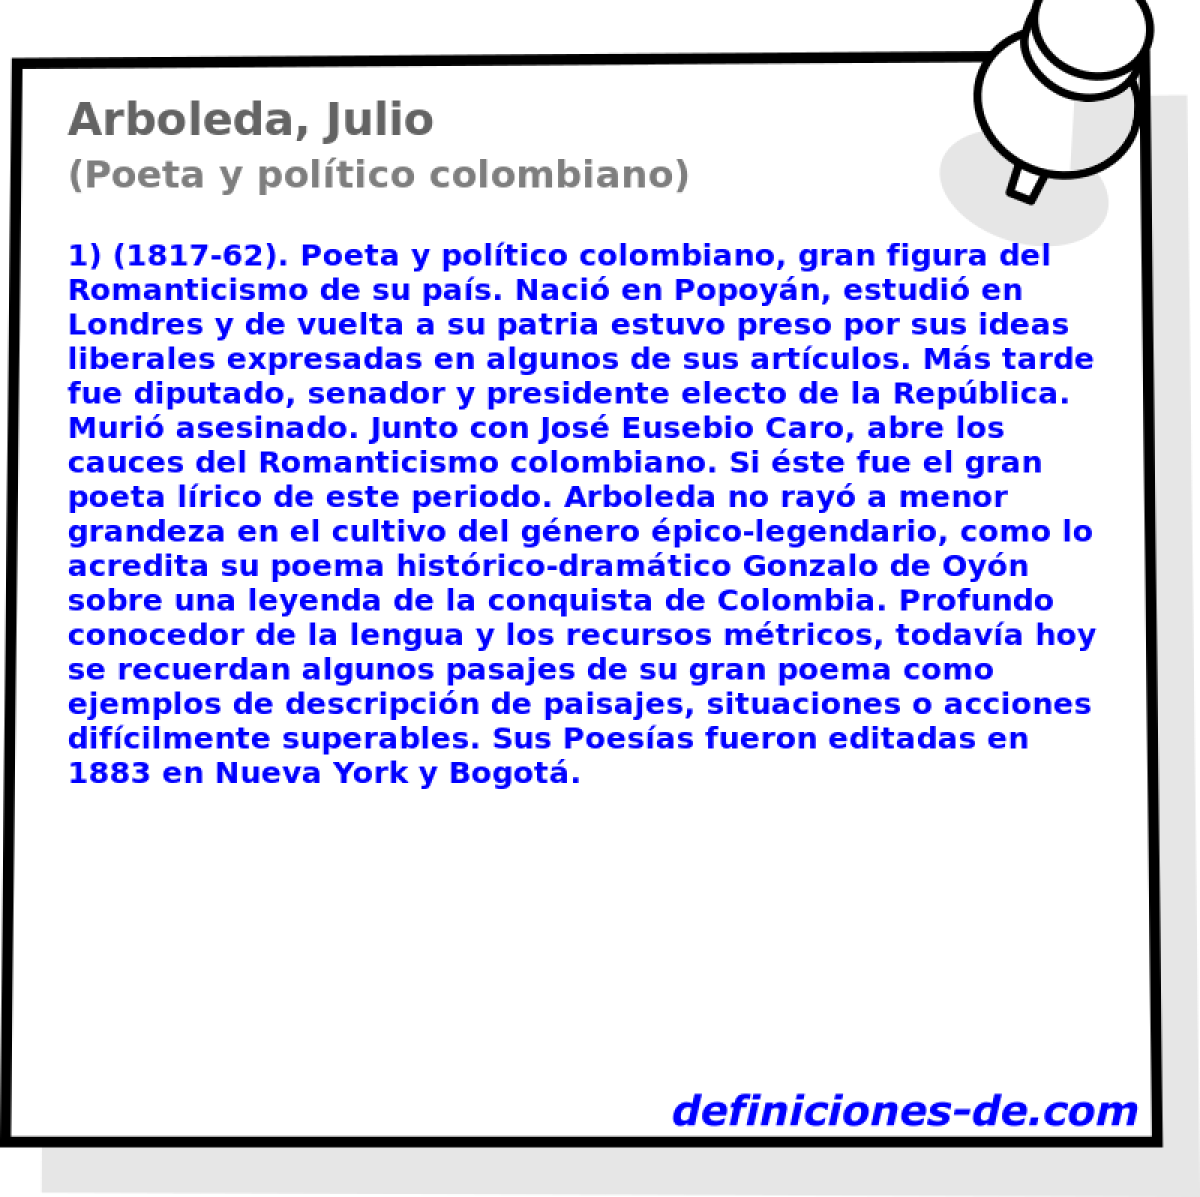 Arboleda, Julio (Poeta y poltico colombiano)